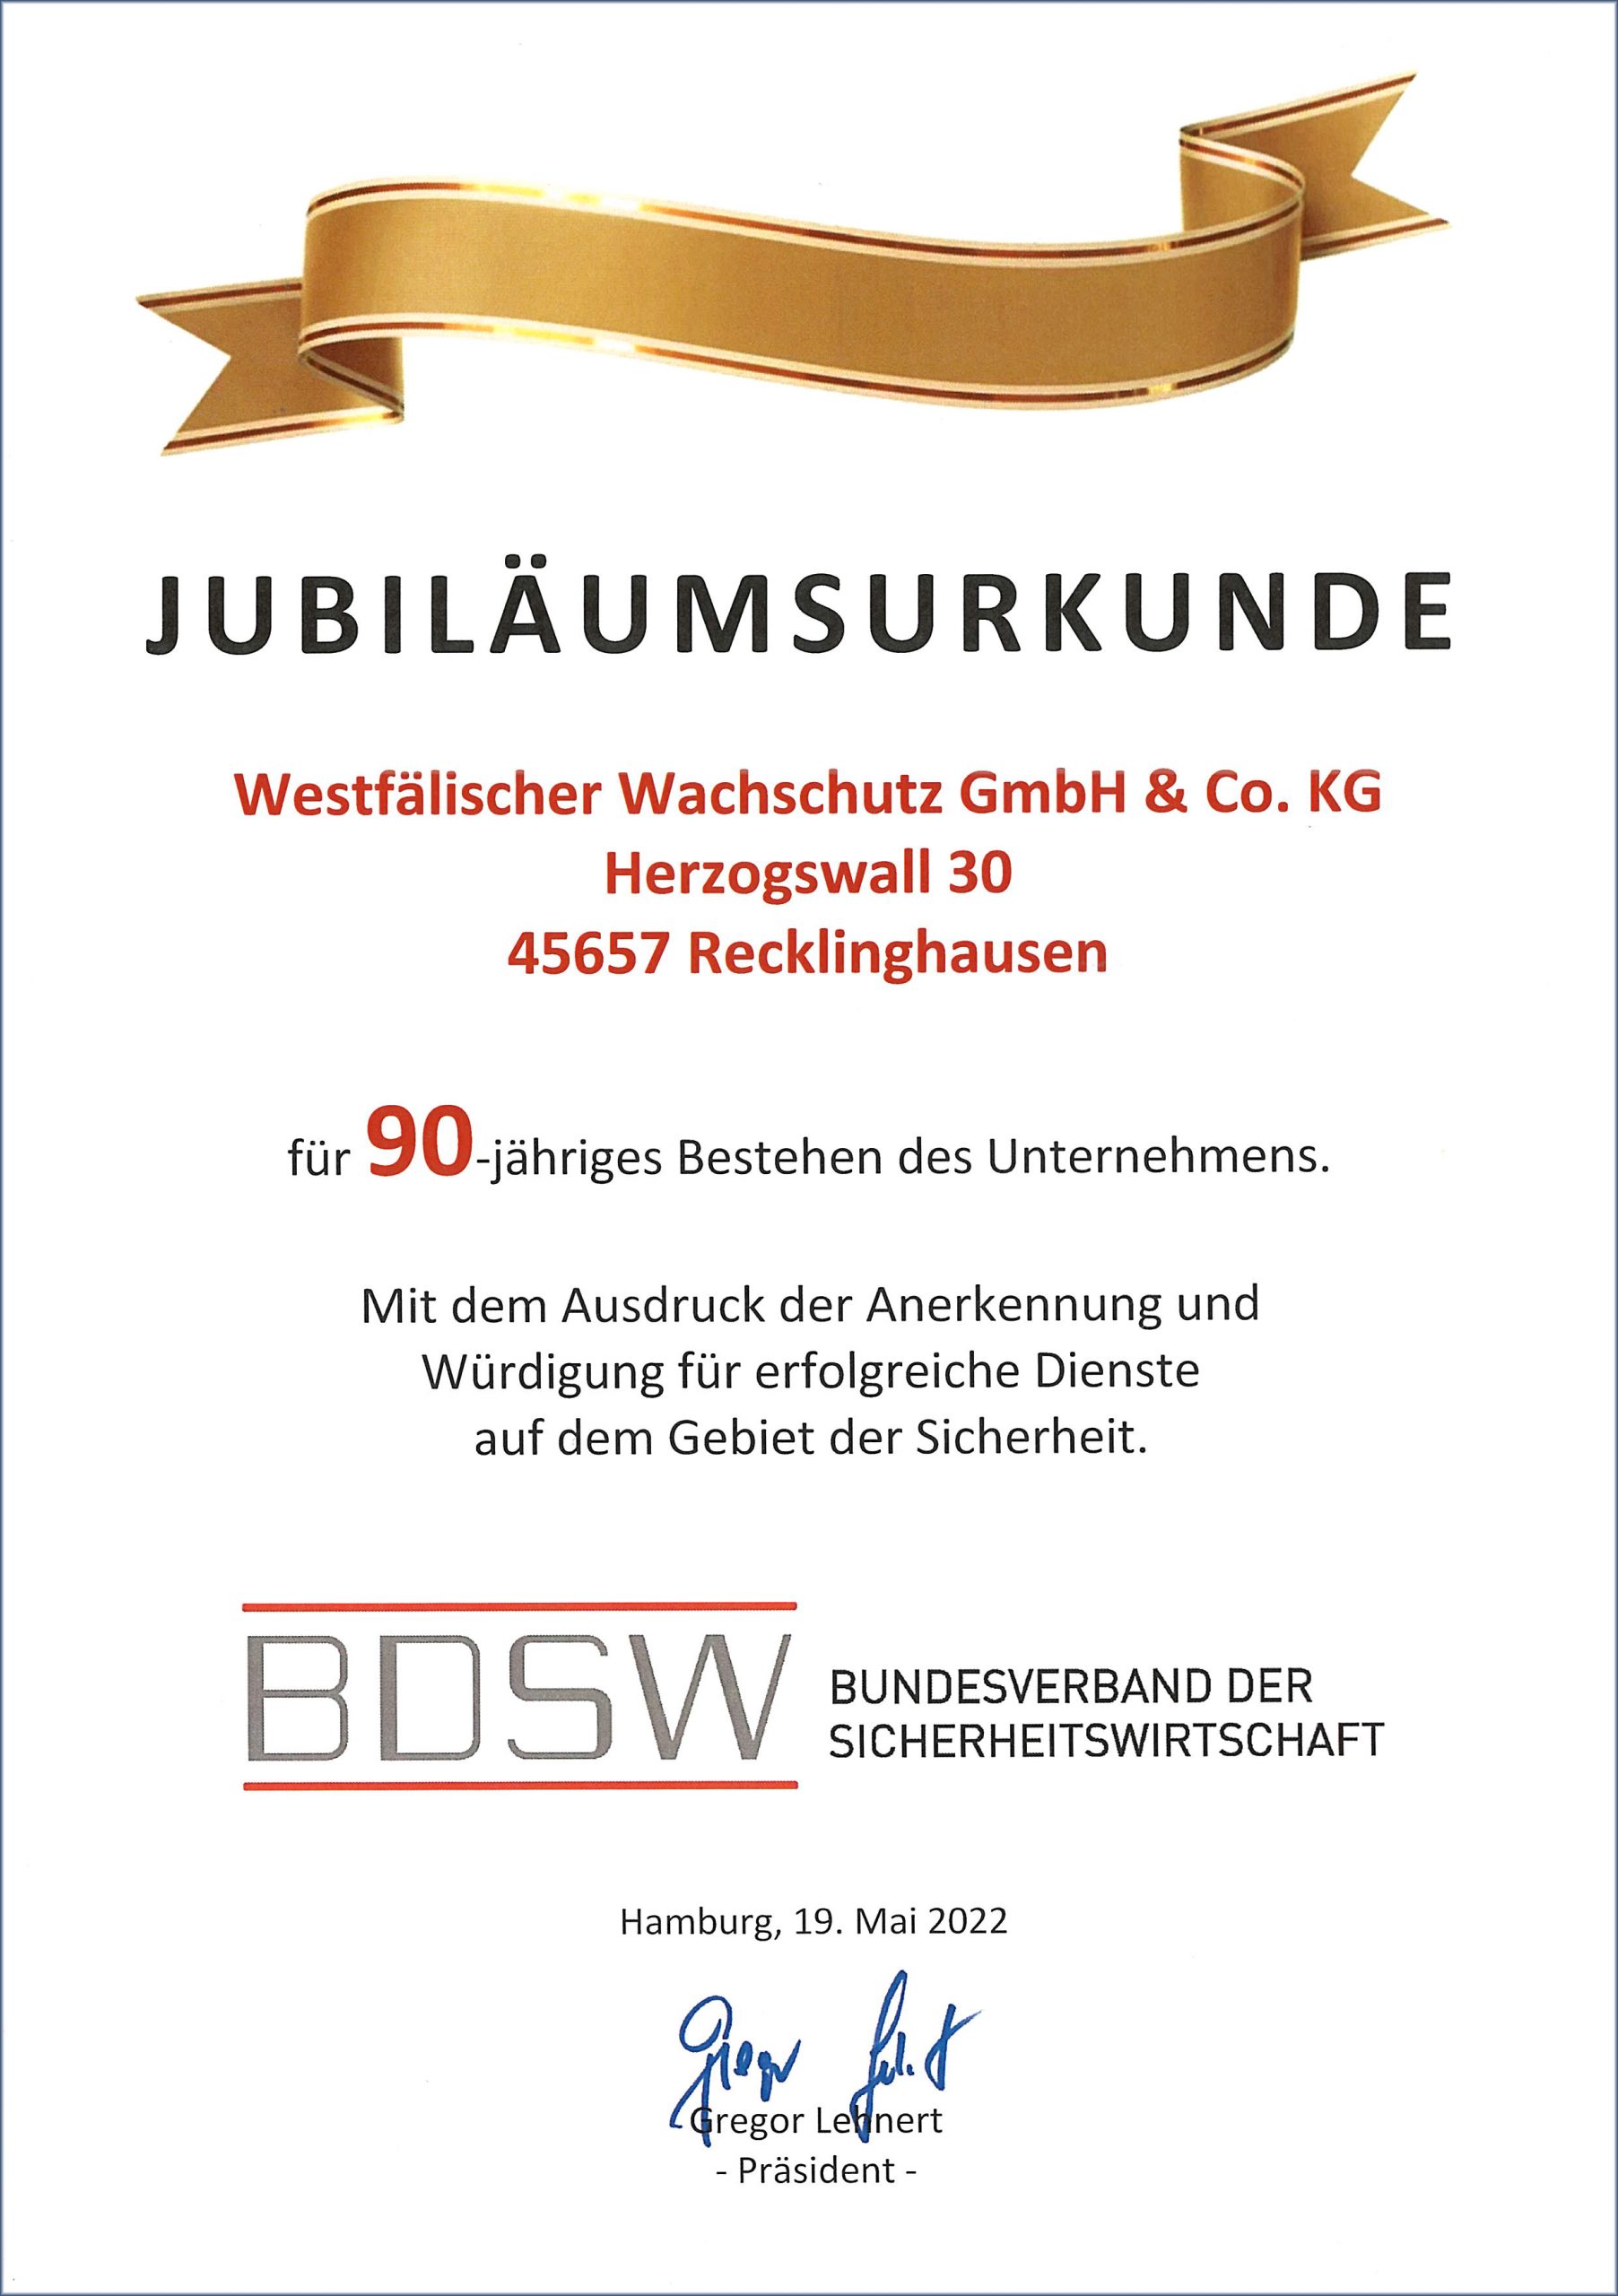 Urkunde, 90 Jahre WWS, BDSW